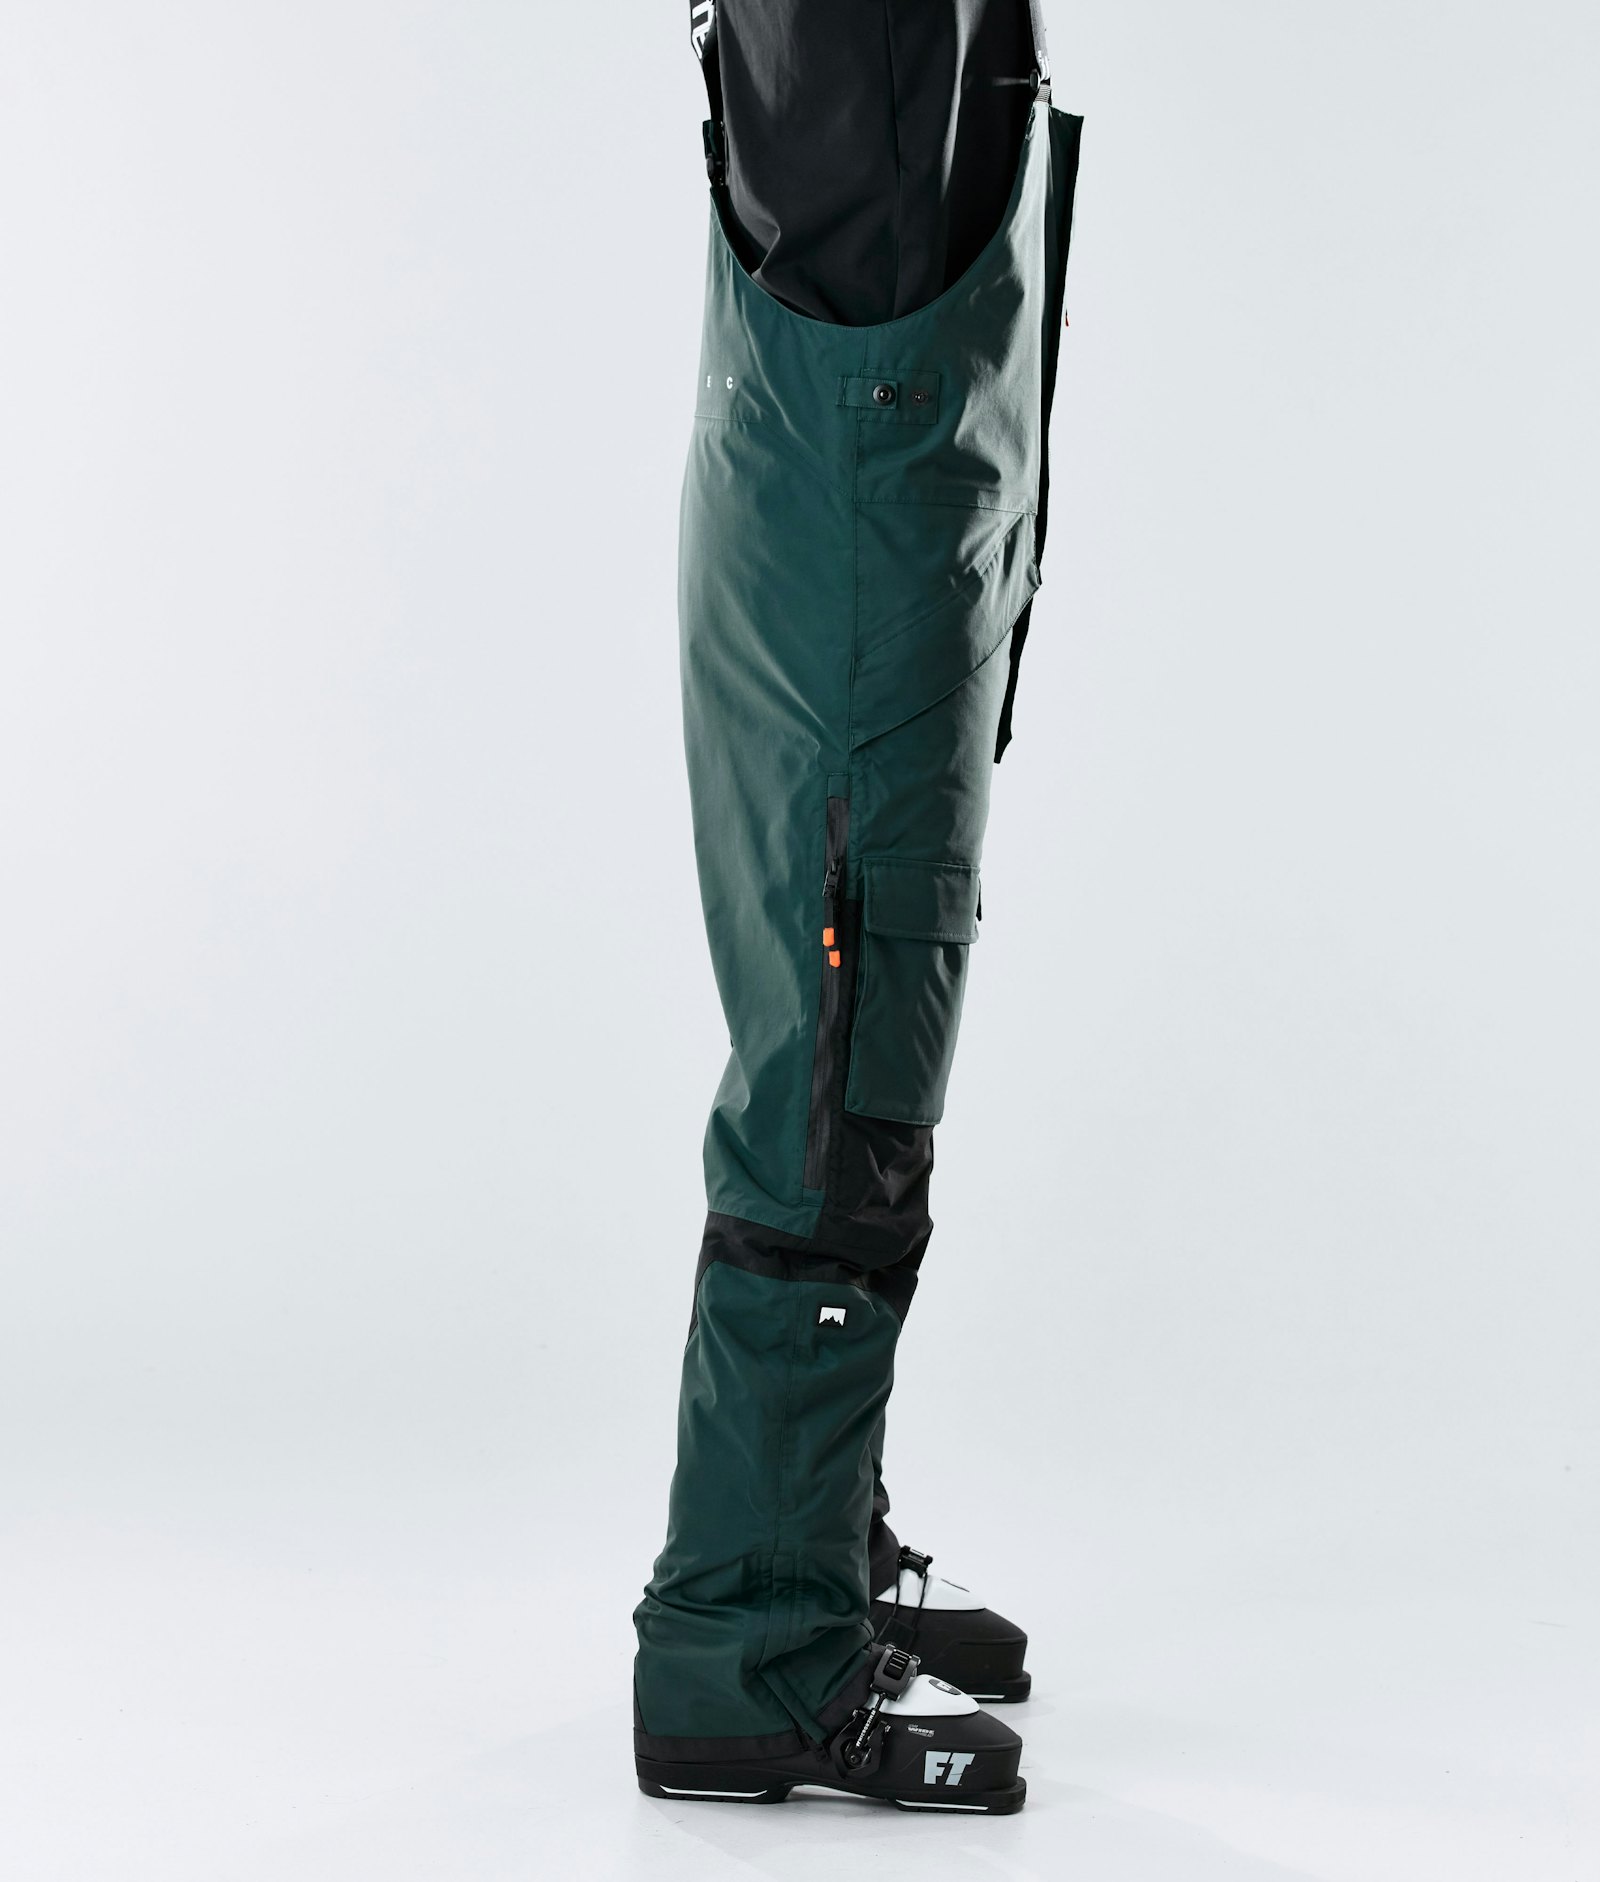 Fawk 2020 Ski Pants Men Dark Atlantic/Black, Image 2 of 6